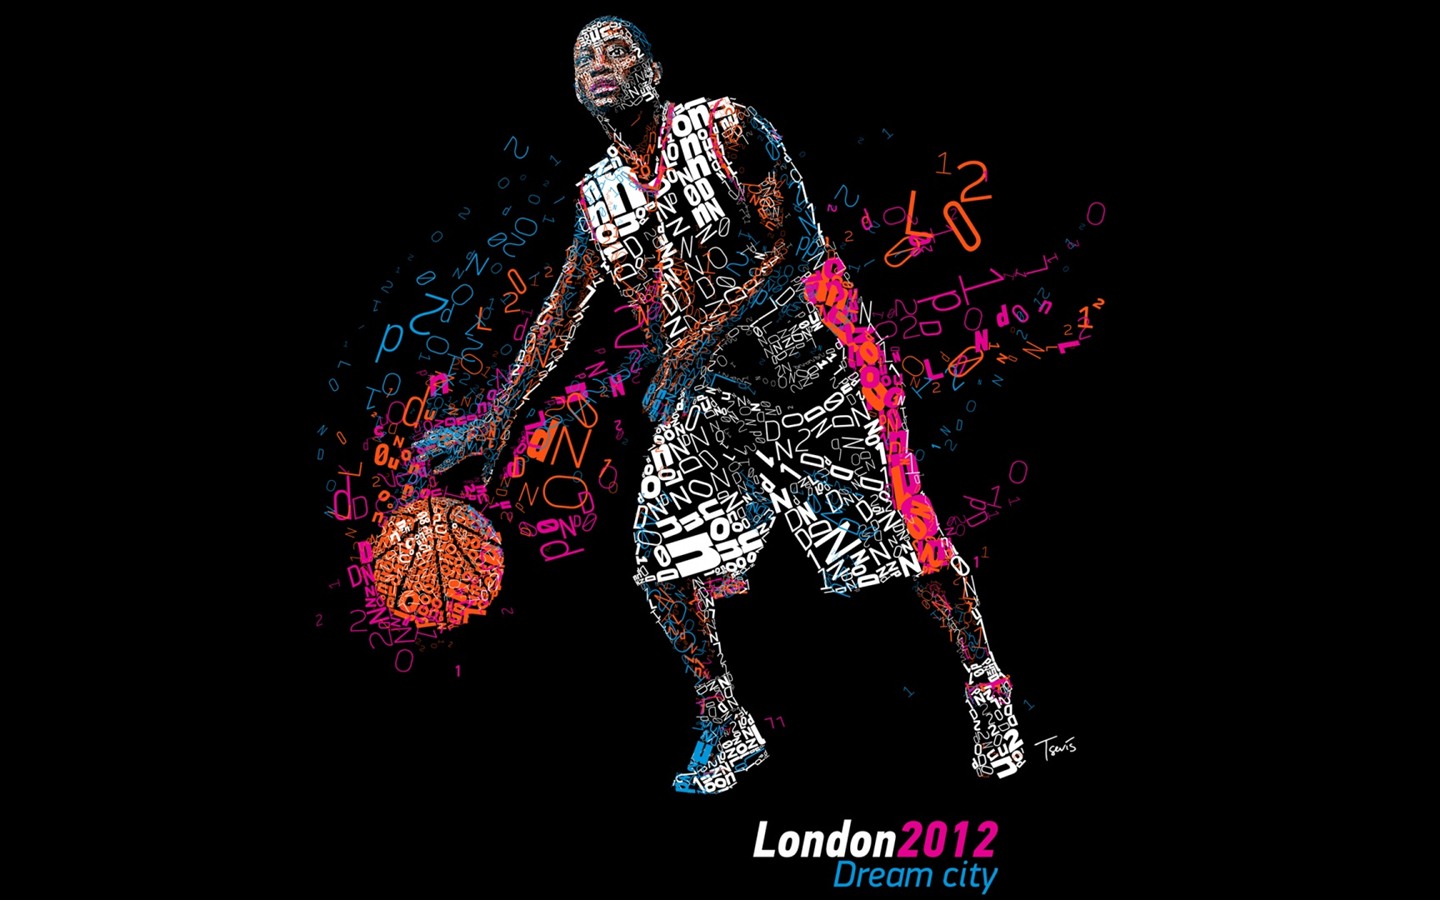 Londres 2012 Olimpiadas fondos temáticos (1) #11 - 1440x900